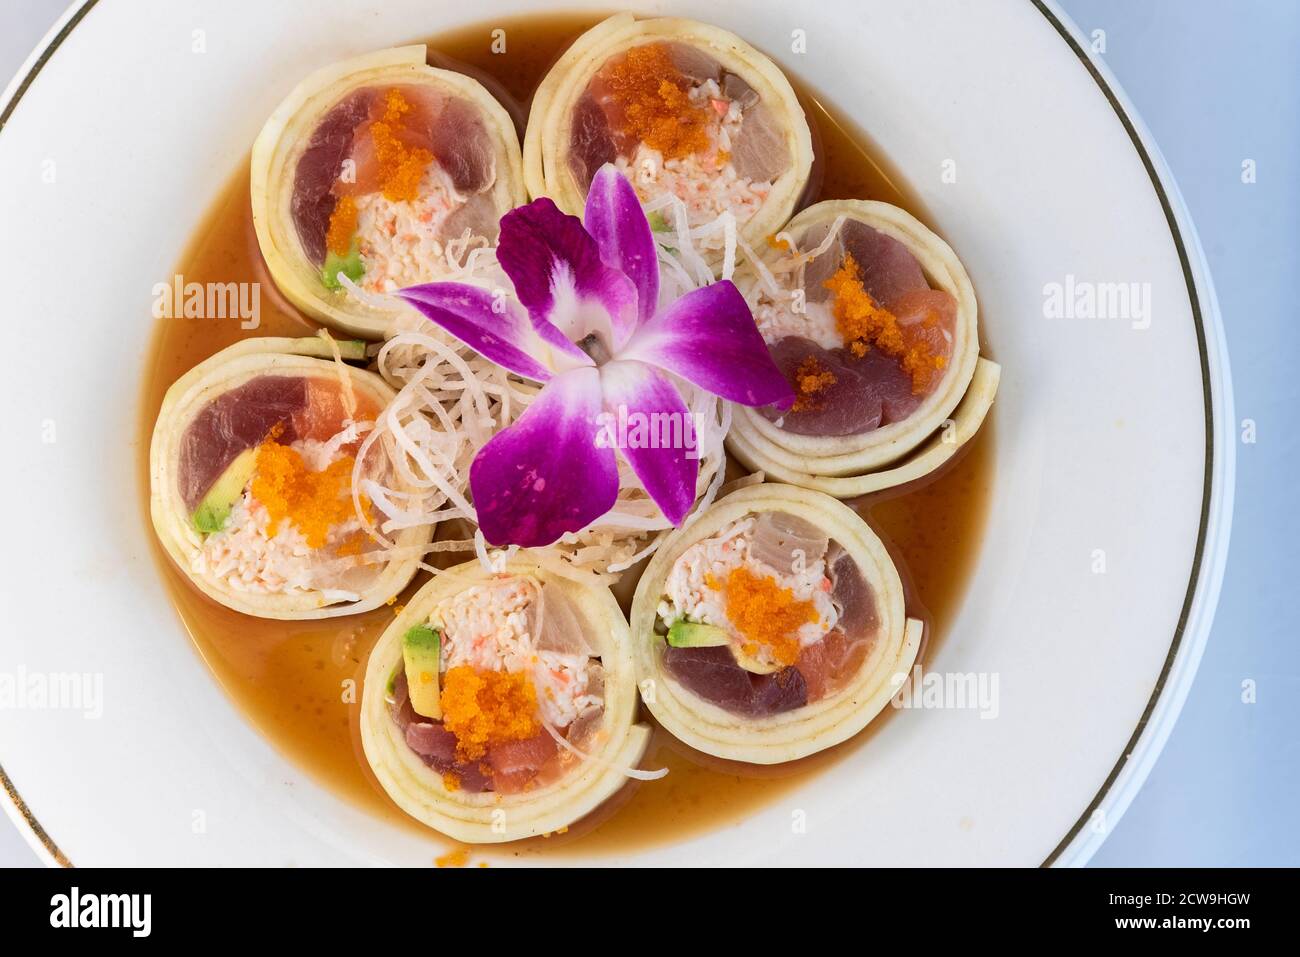 Vue en hauteur d'un assortiment de poissons crus disposés en rouleau de suhshi enrobé de concombre délicatement présenté sur une assiette à manger. Banque D'Images